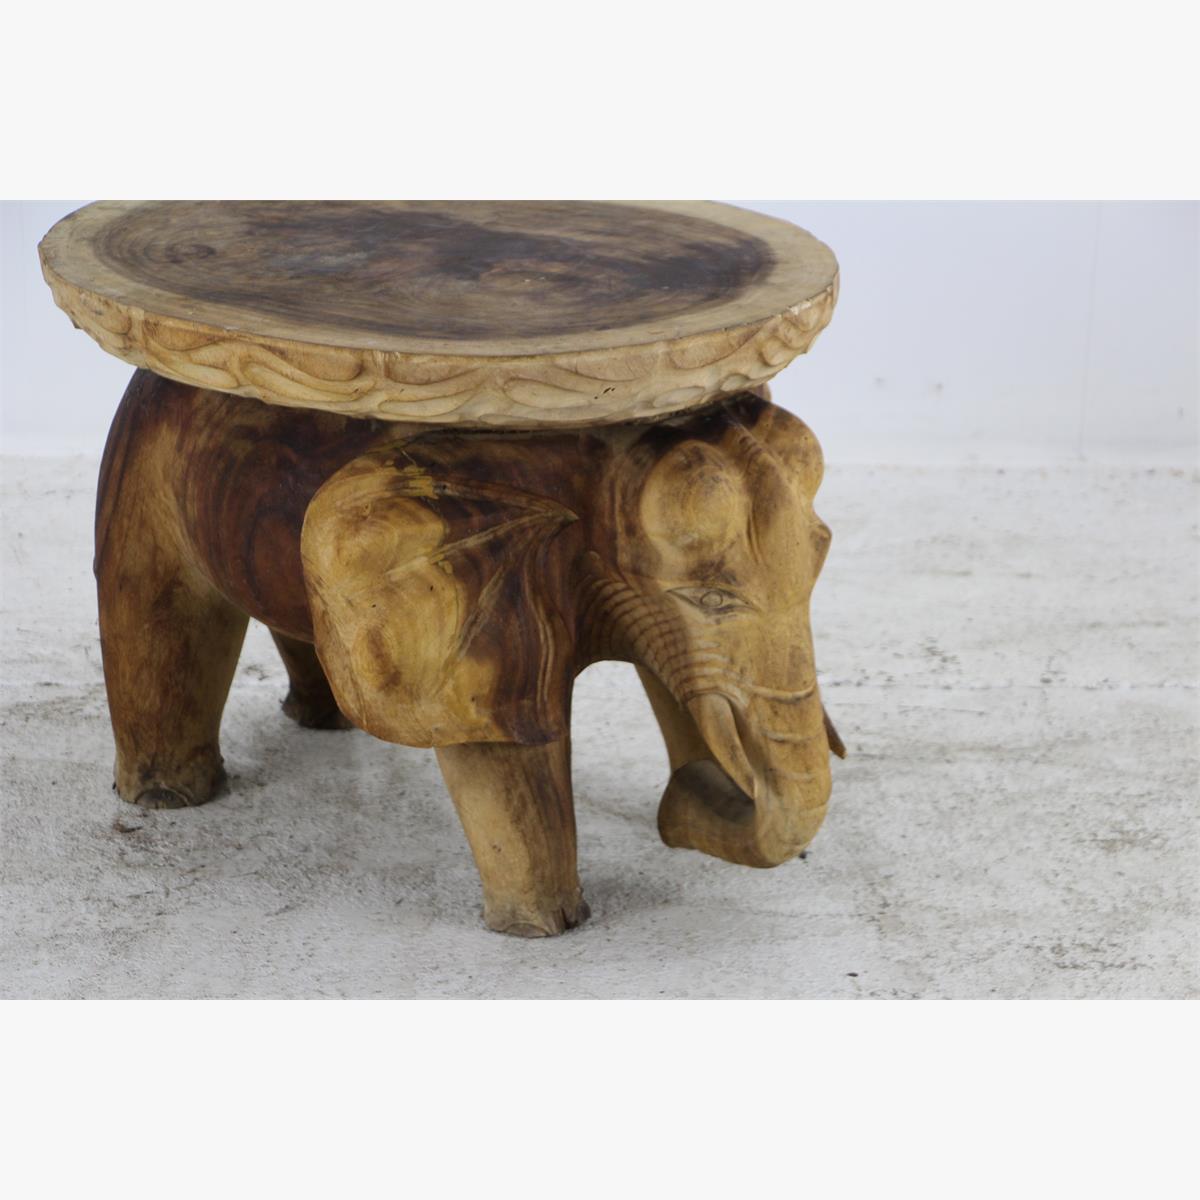 Afbeeldingen van massieve hout salontafel olifant